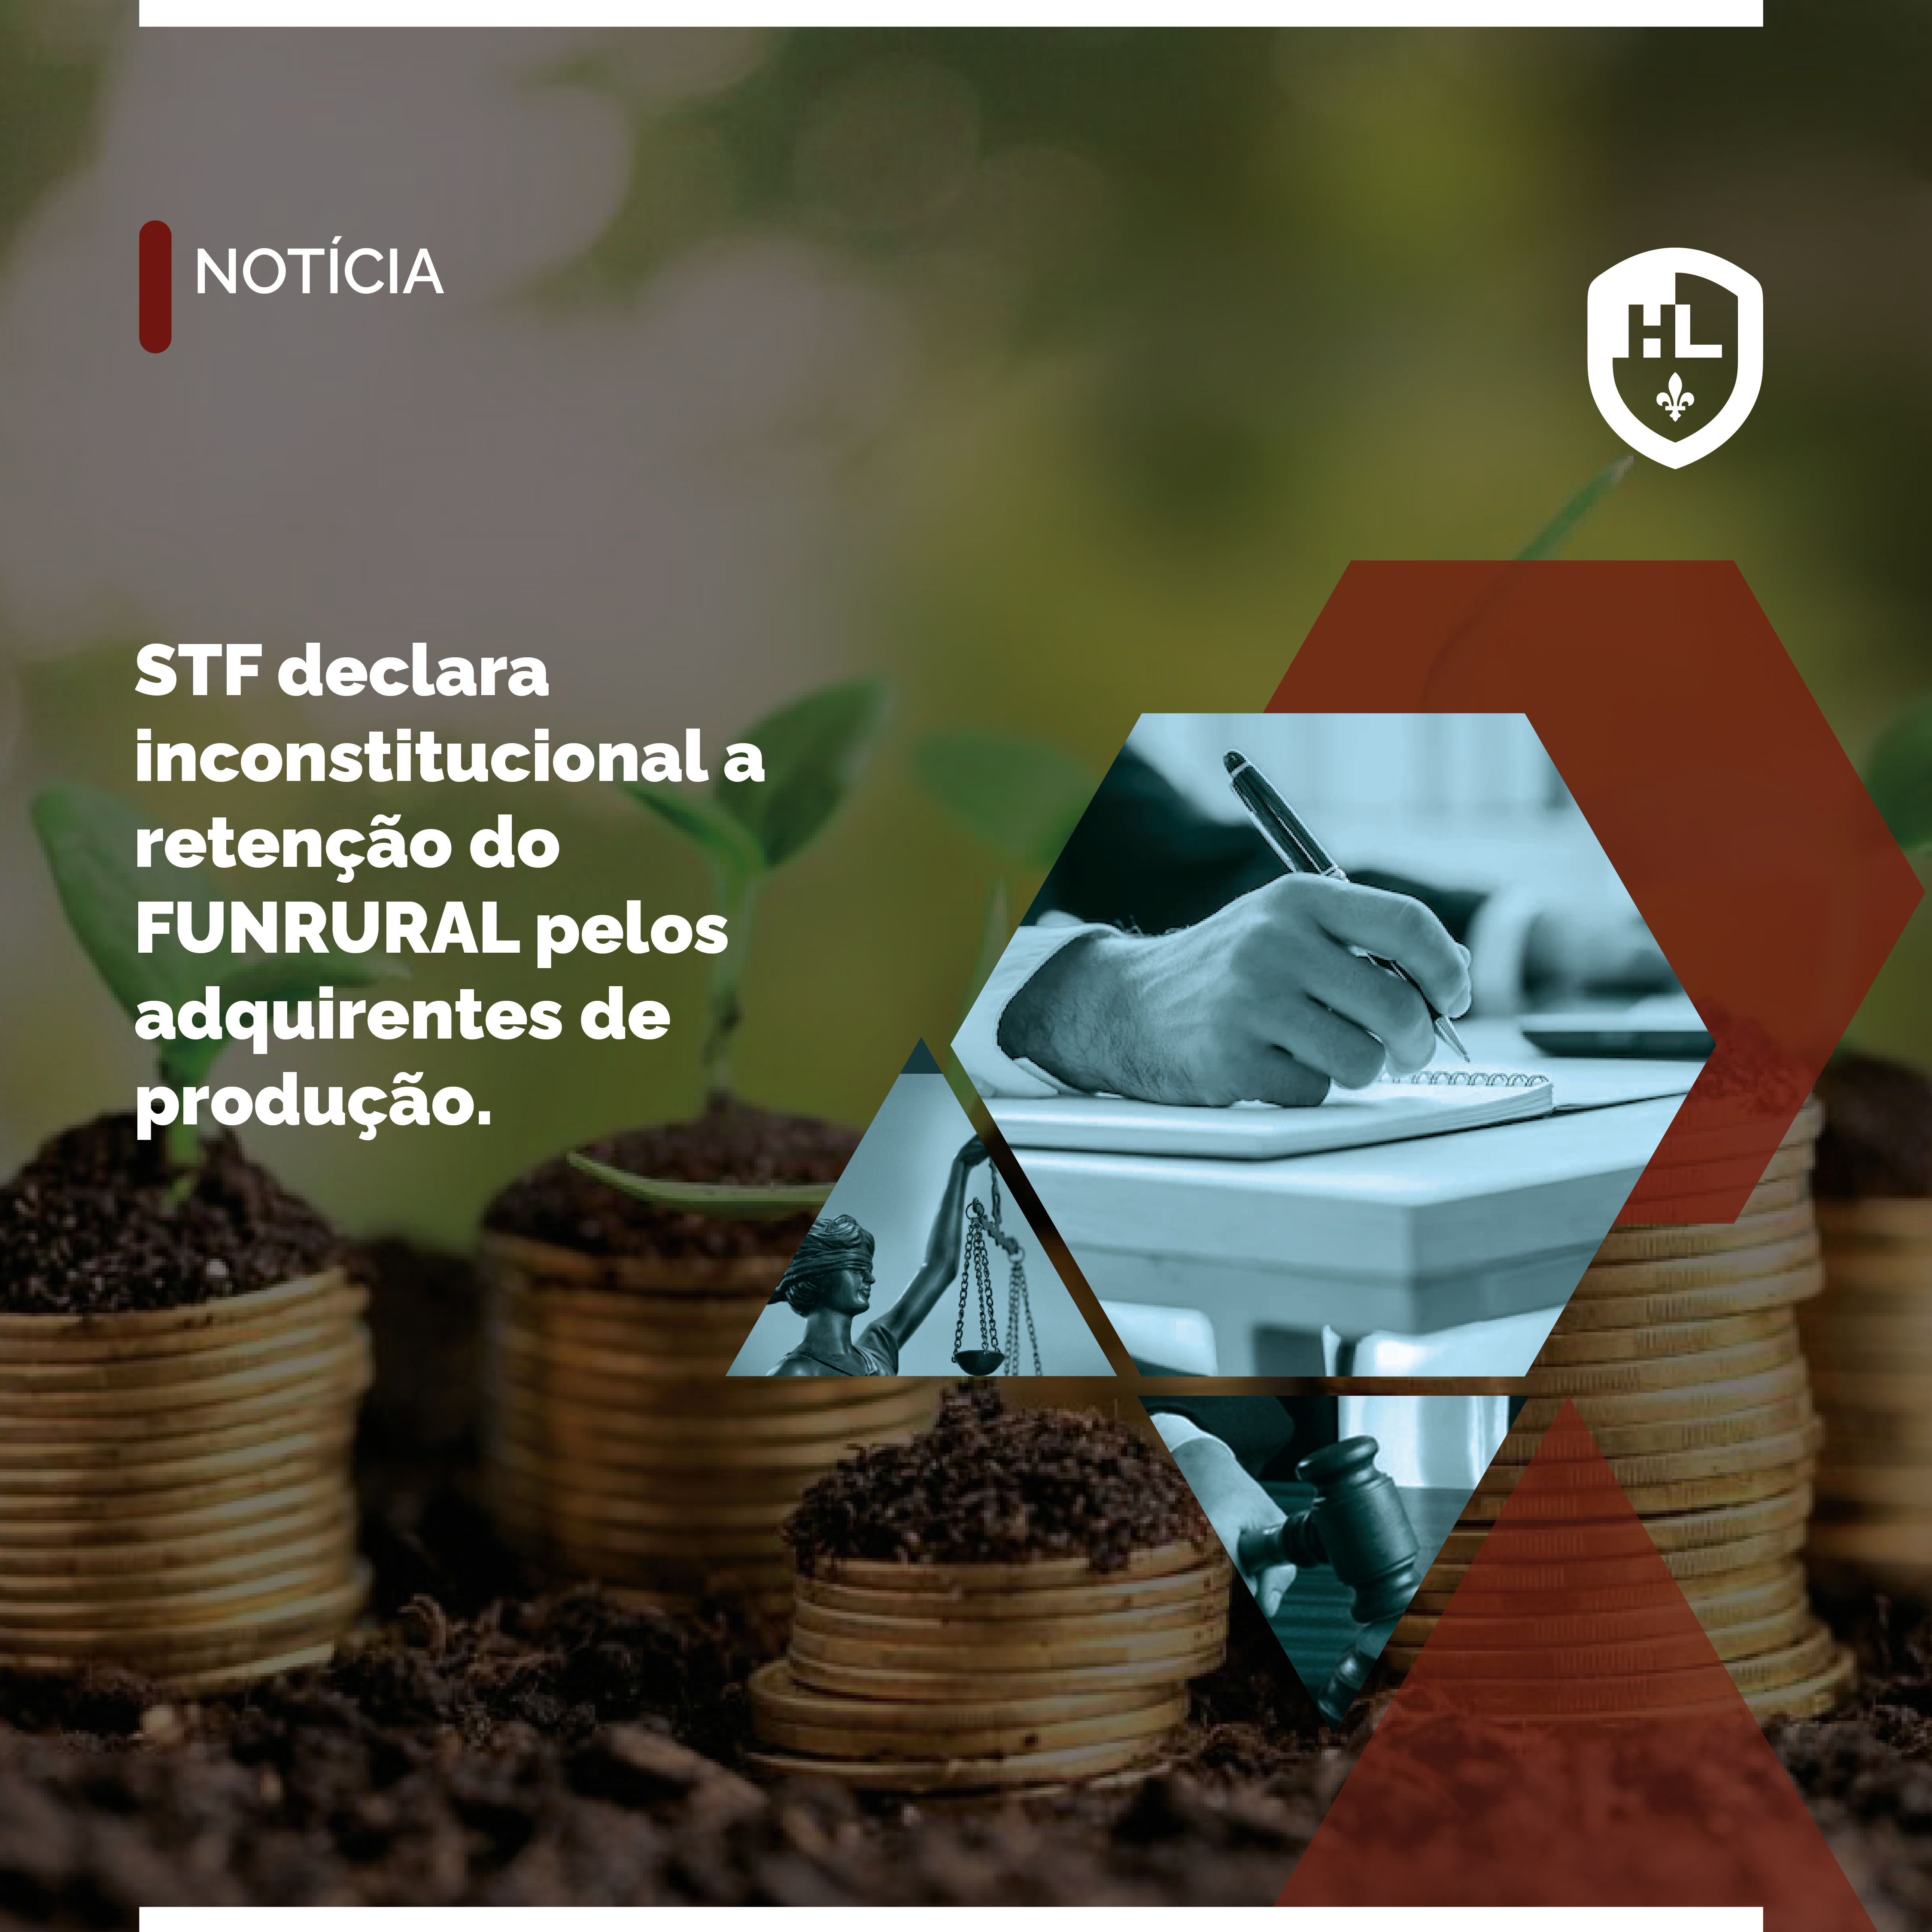 STF declara inconstitucional a retenção do FUNRURAL pelos adquirentes de produção